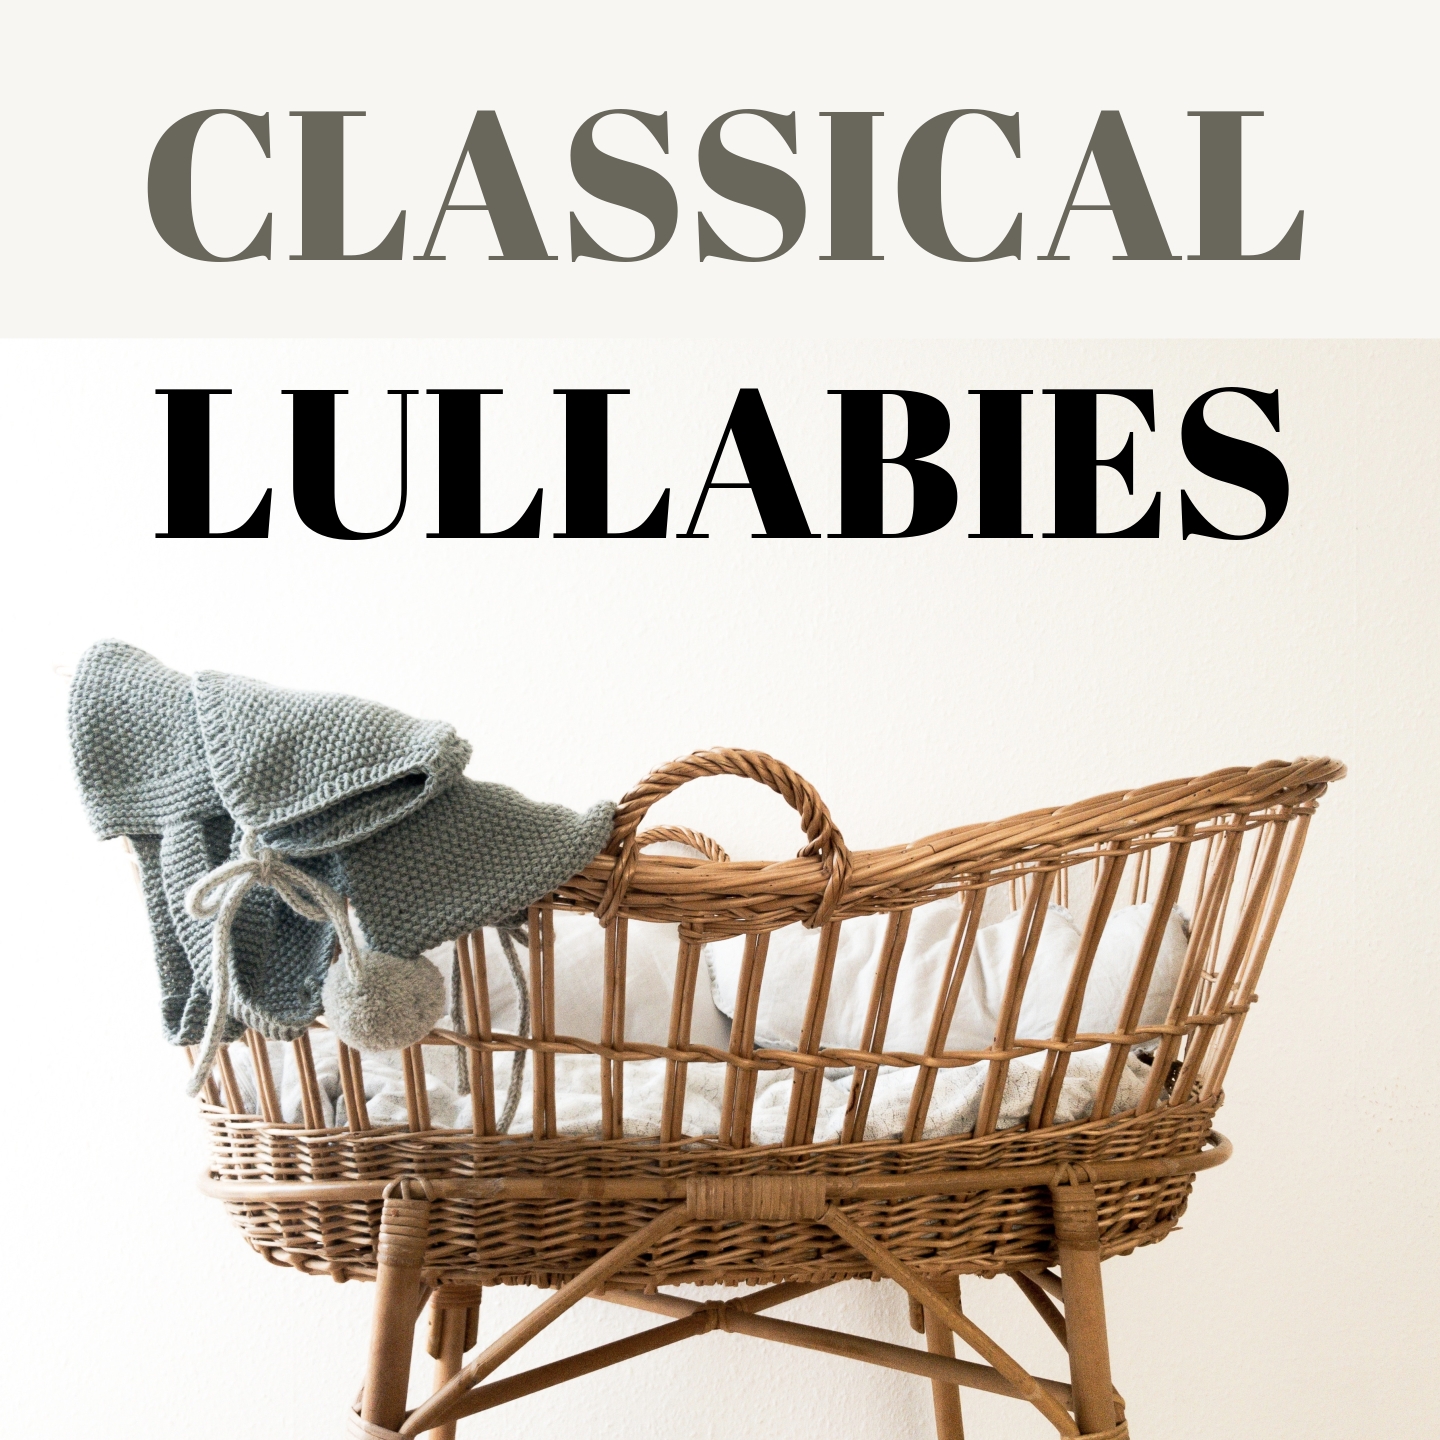 Classical lullabies